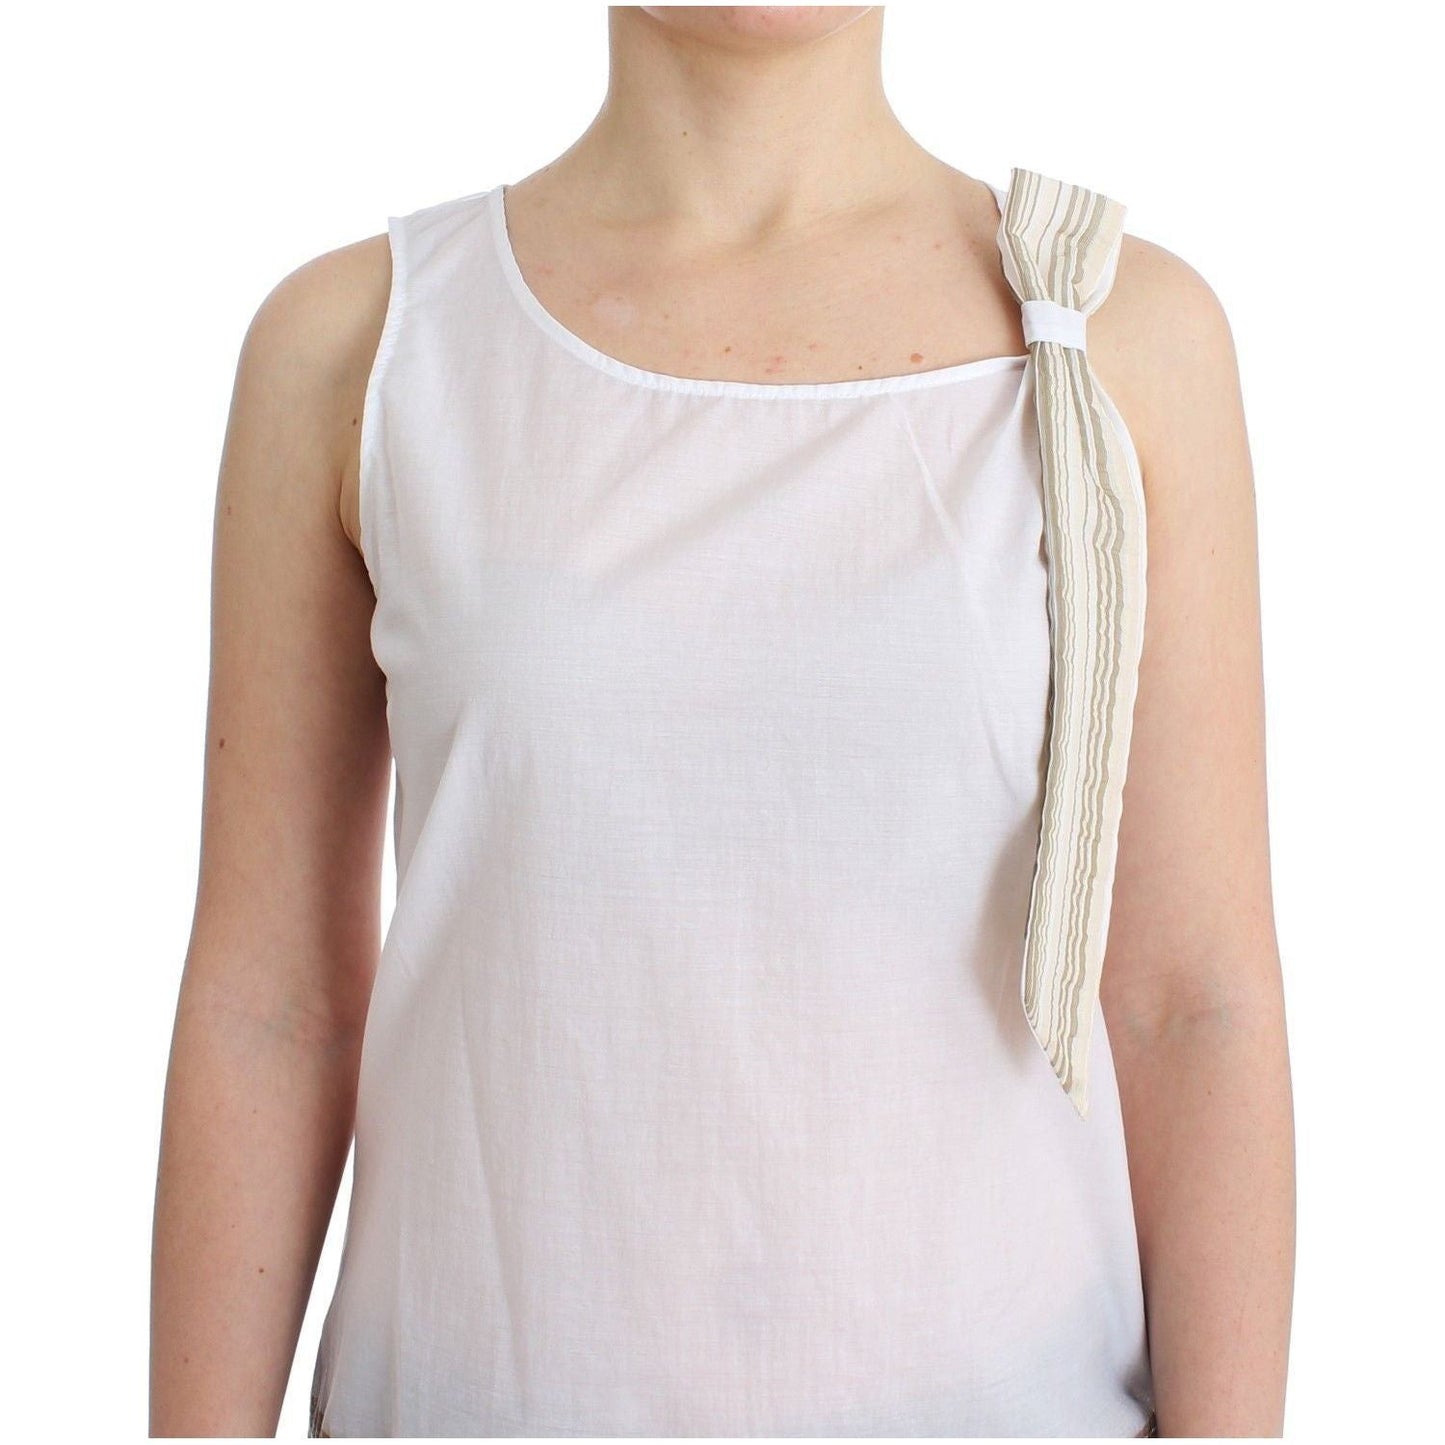 Ermanno Scervino Elegant White Bow-Detailed Sleeveless Top white-top-blouse-tank-shirt-sleeveless